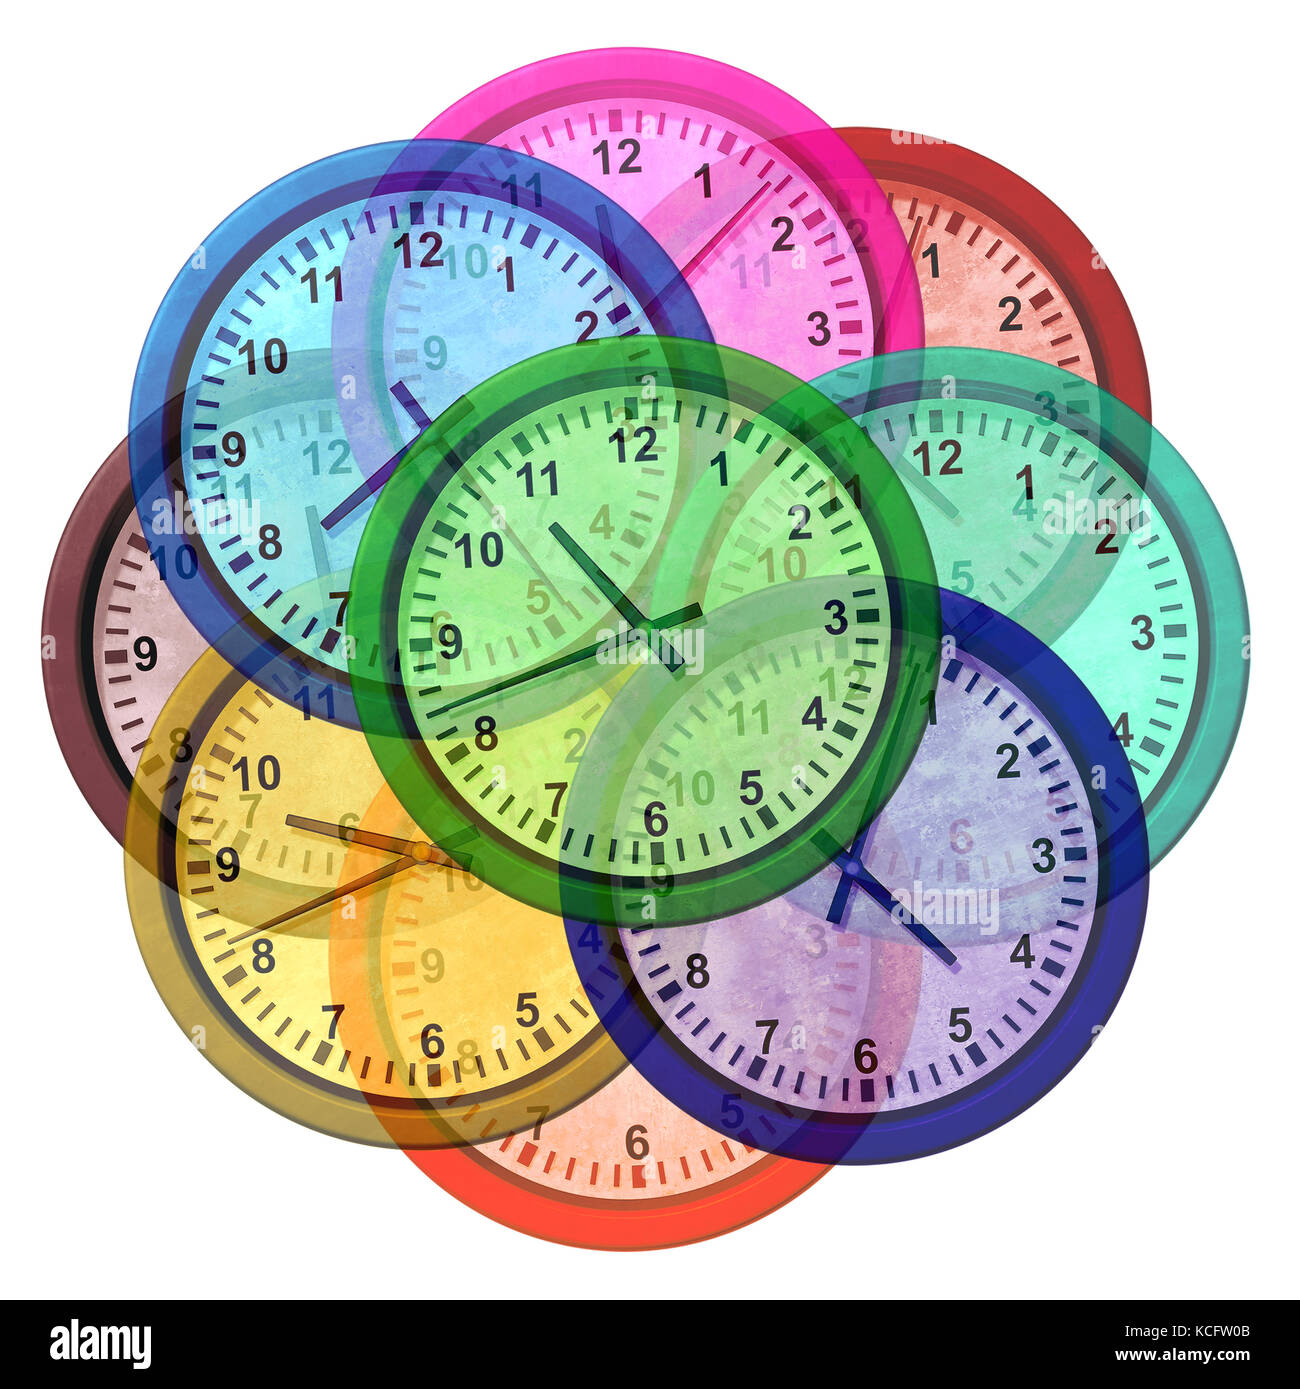 Orologi del fuso orario e simbolo di viaggi d'affari nel mondo come un gruppo di icone dell'orologio che rappresentano diverse città internazionali come pechino, New york. Foto Stock